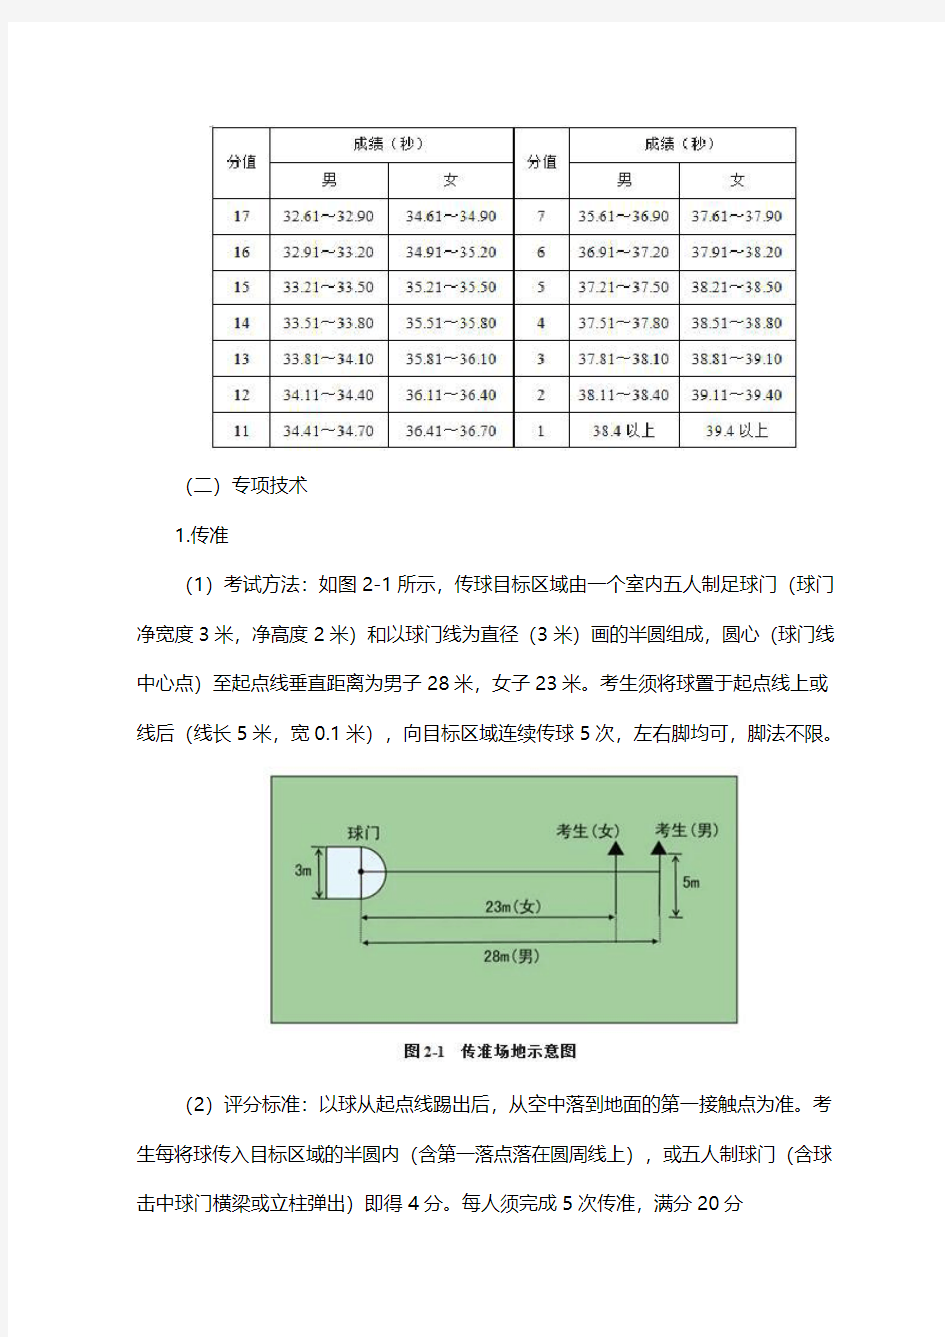 湖南工业大学2019年高水平运动员测试各项目评分标准Ⅰ足球